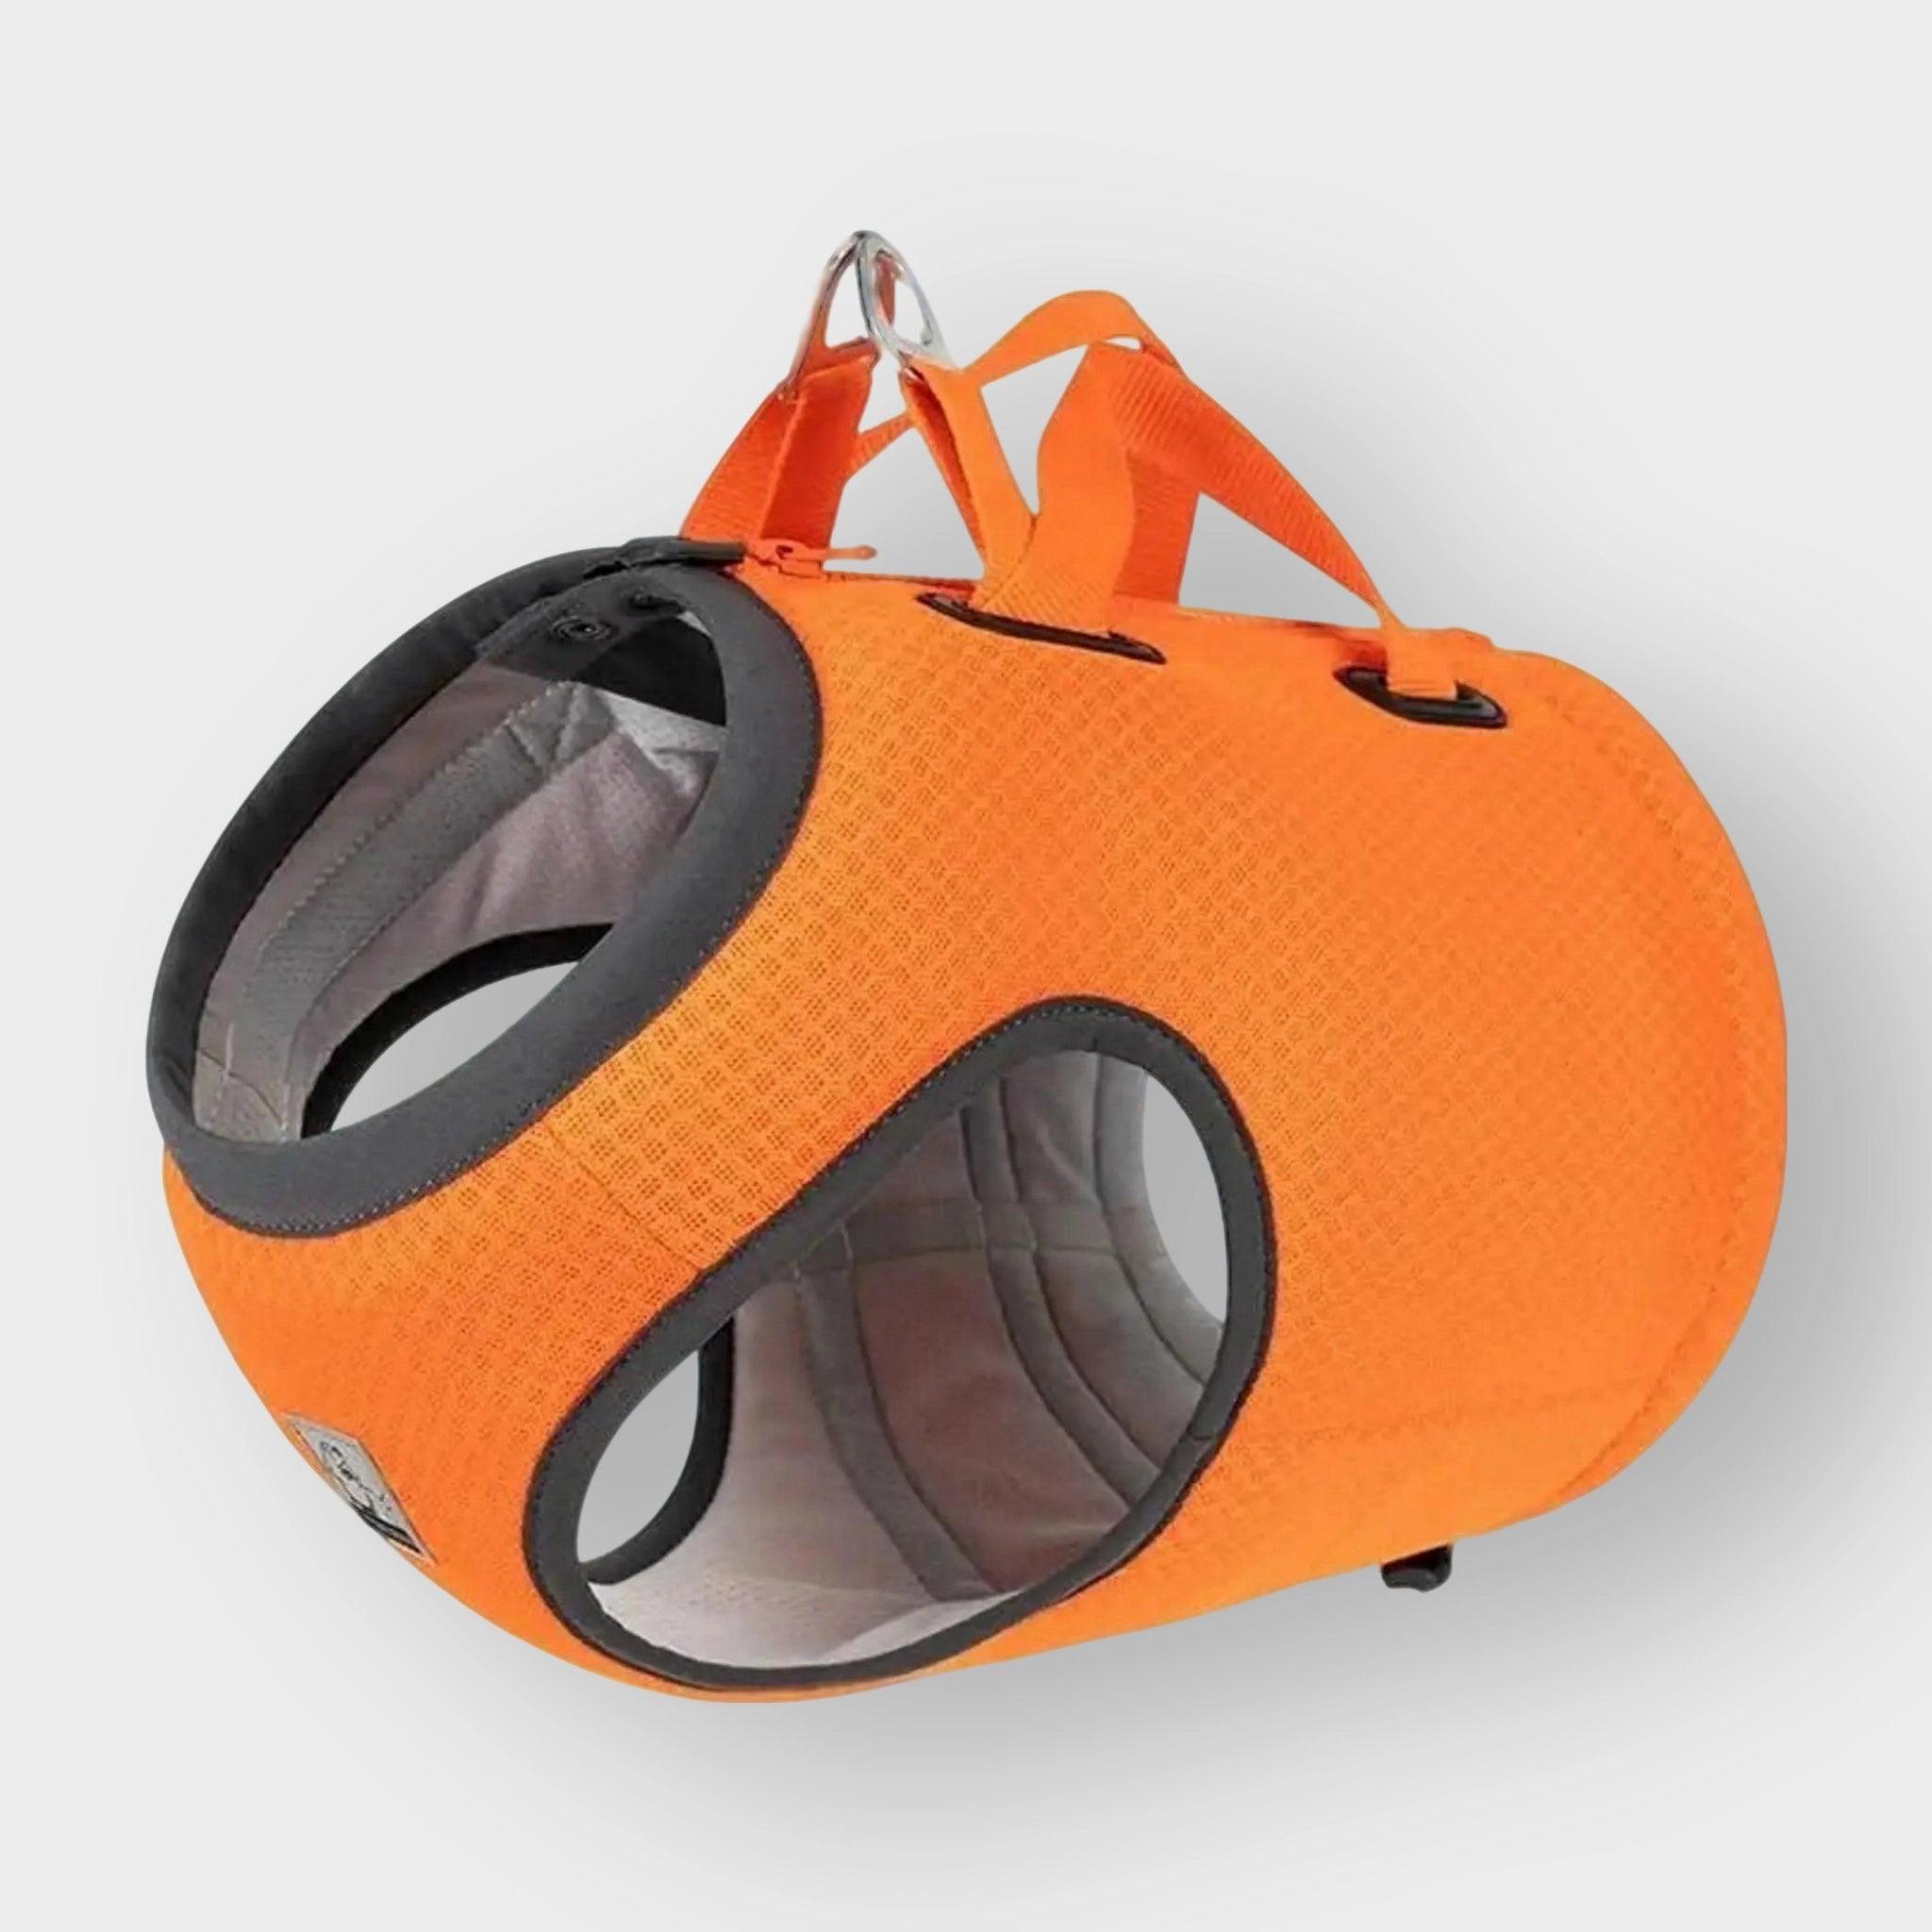 Oranges Hundegeschirr von Truelove, geeignet für die Sicherheit im Auto. Pet-Shop24